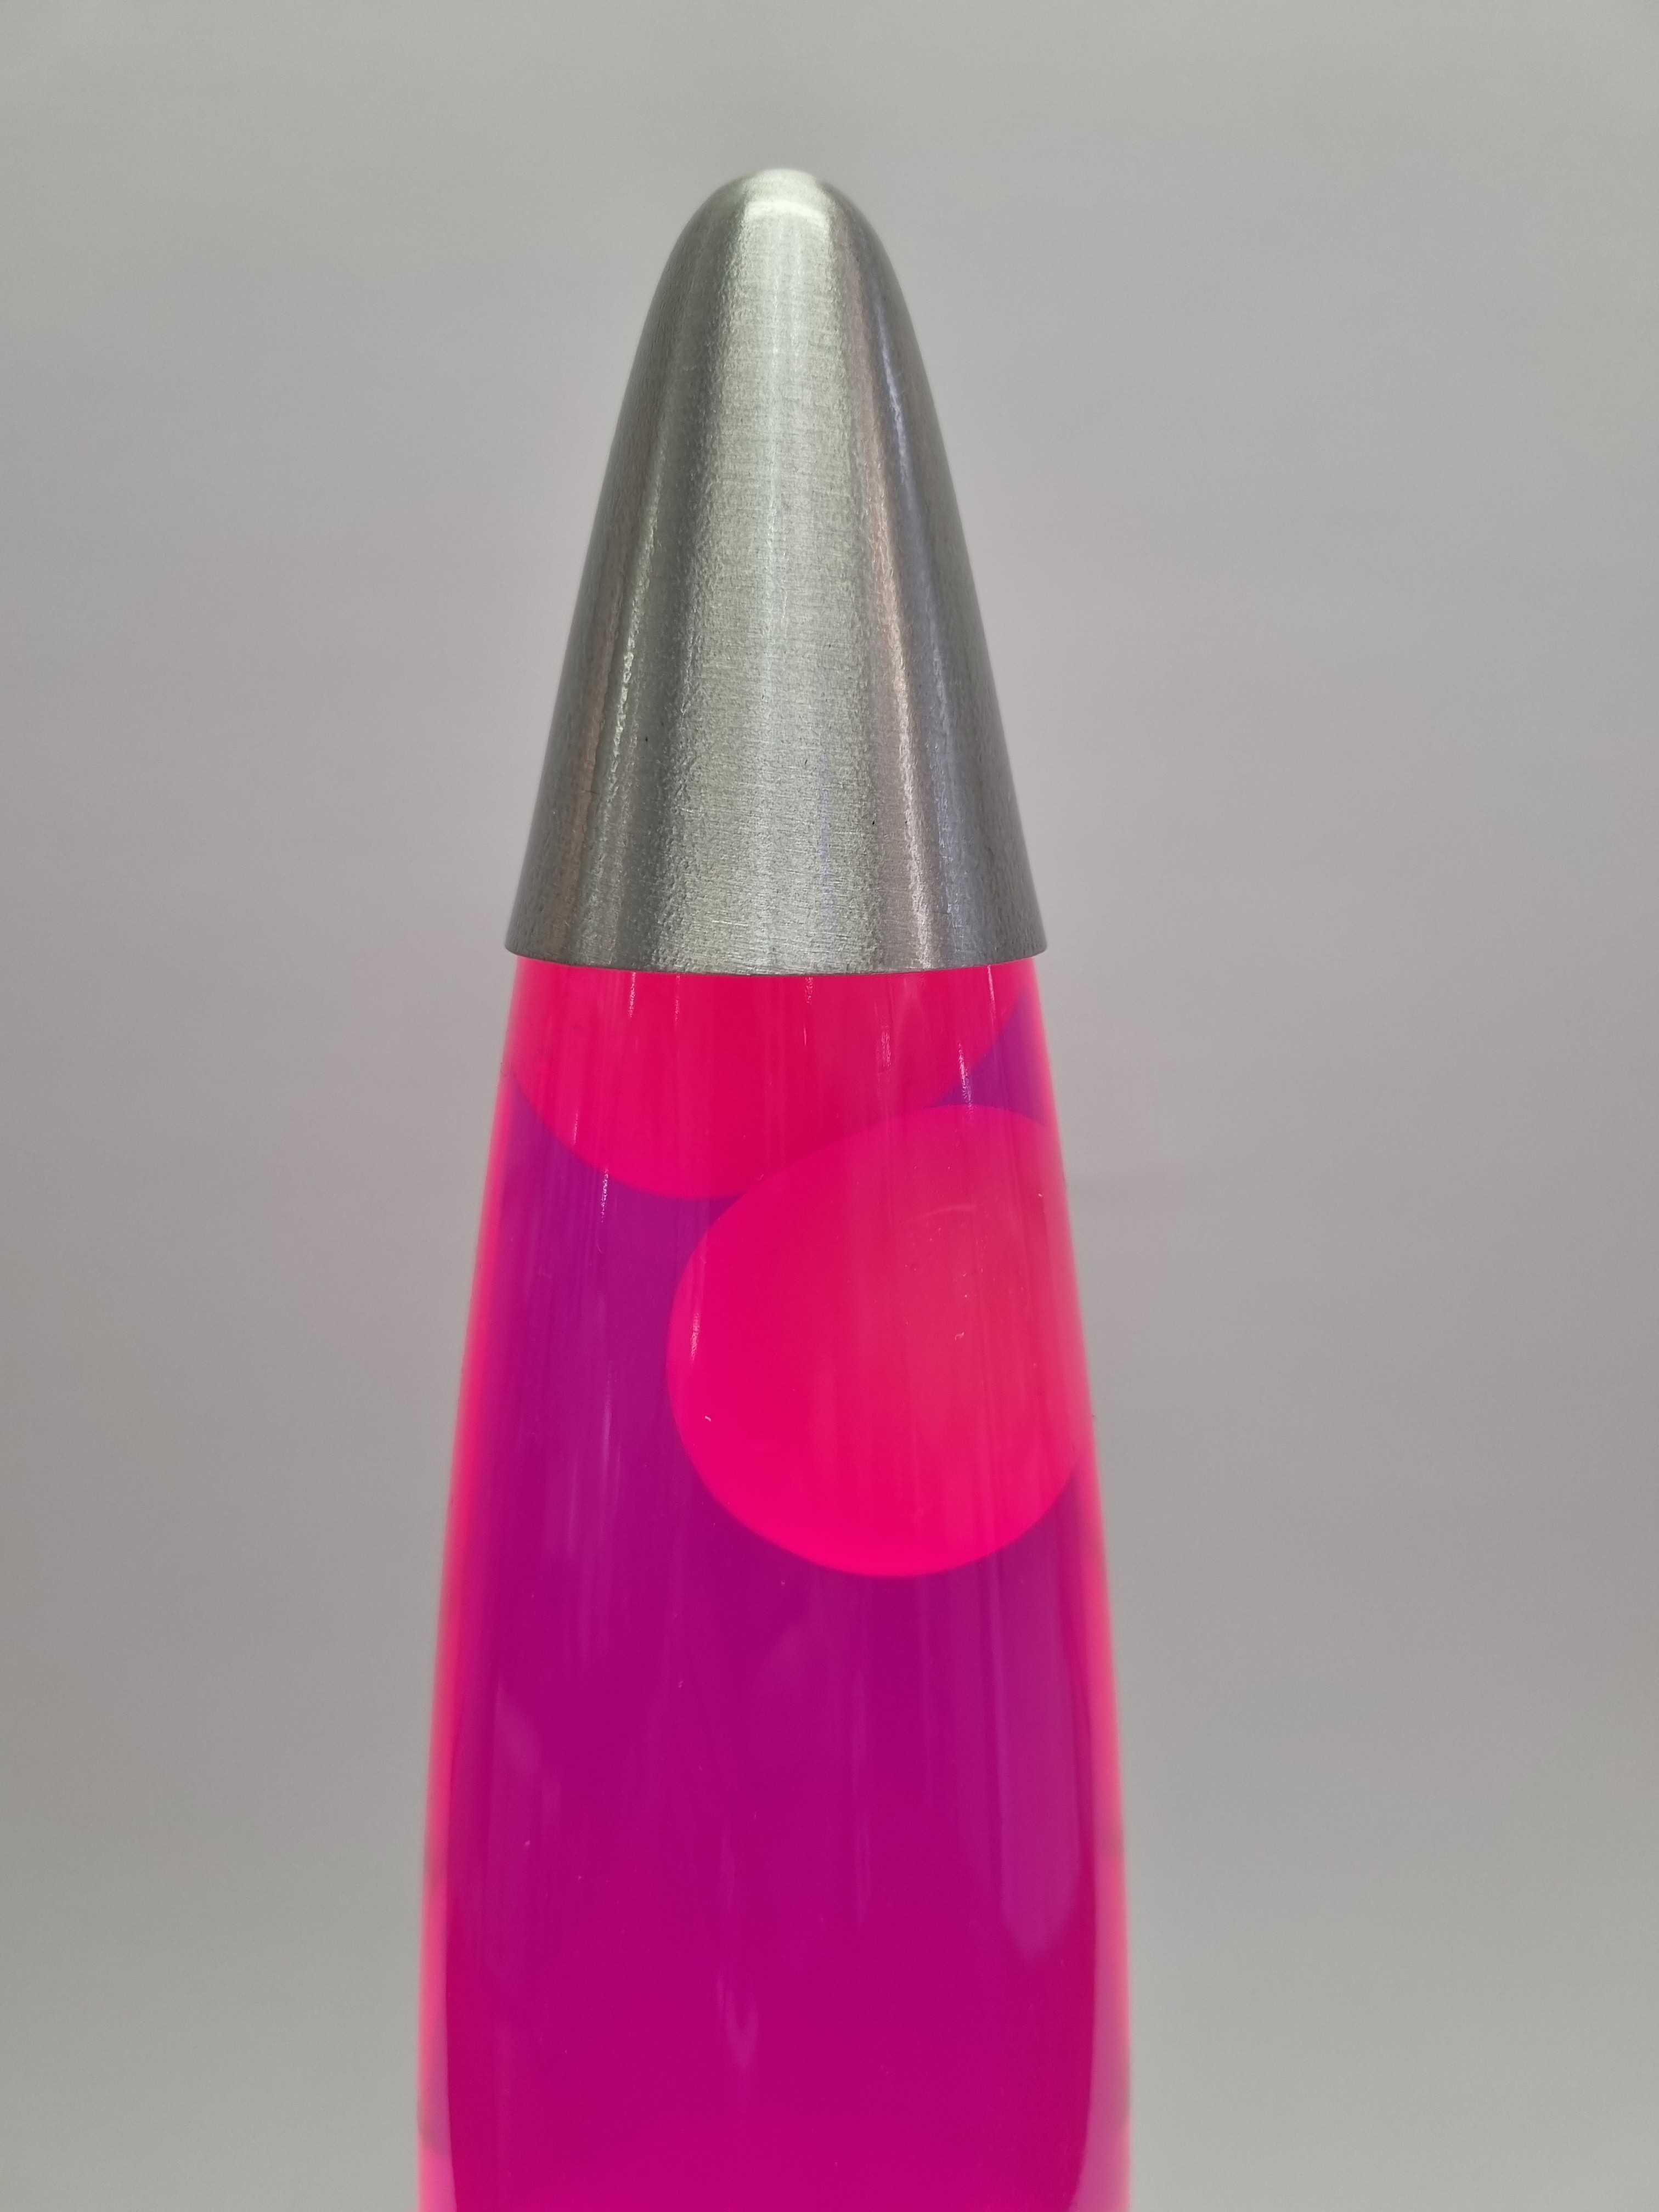 Лавалампа Rabalux 4108 Lollipop (Настольная лампа Лава лампа)